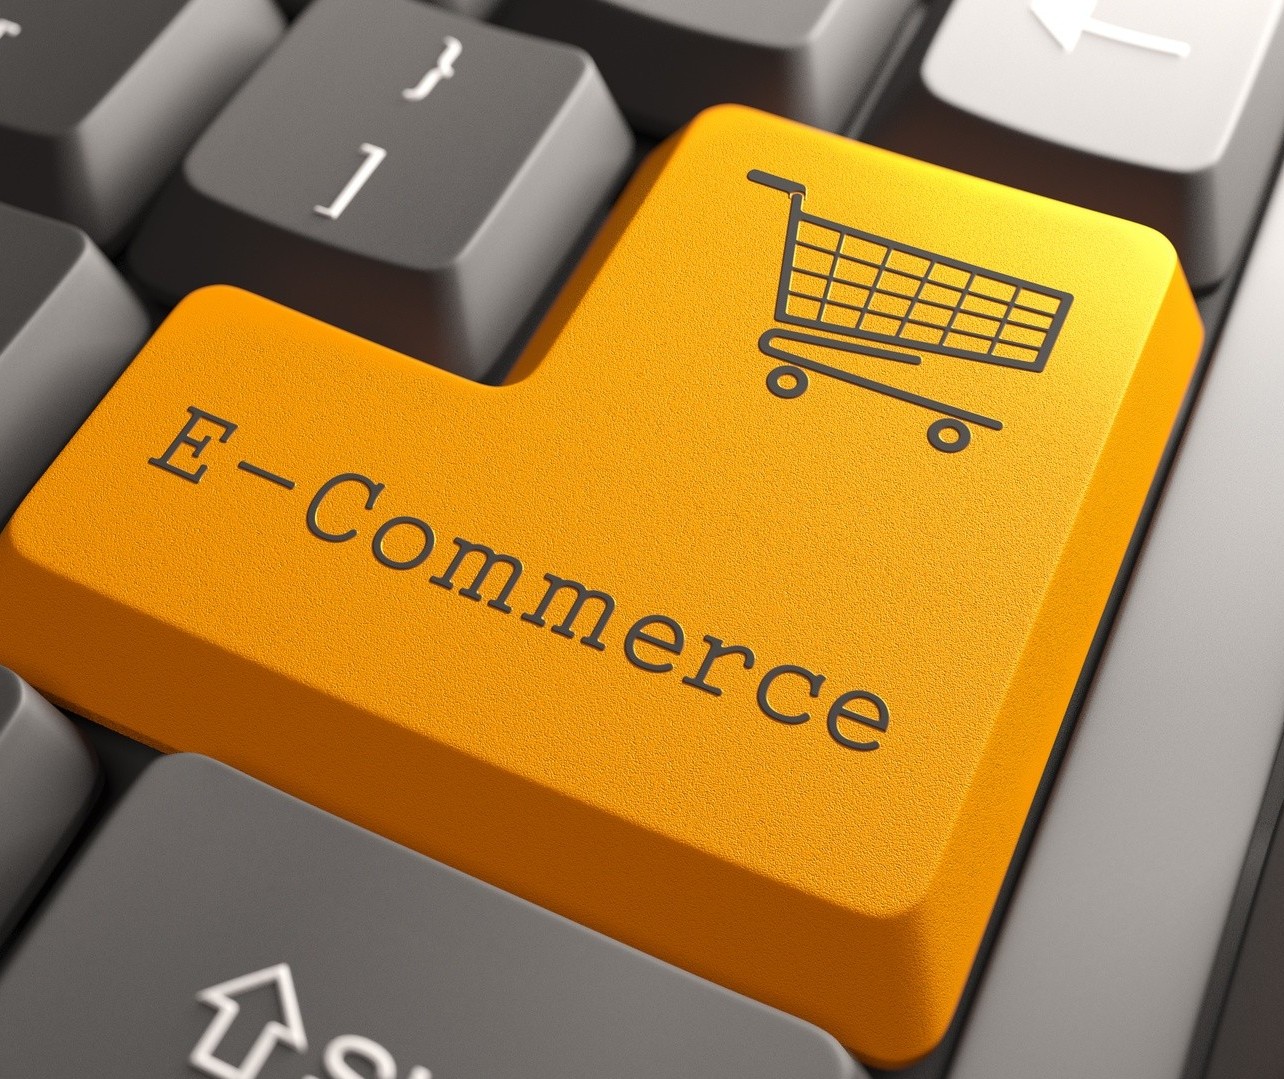 Como empresas menores podem competir no e-commerce?